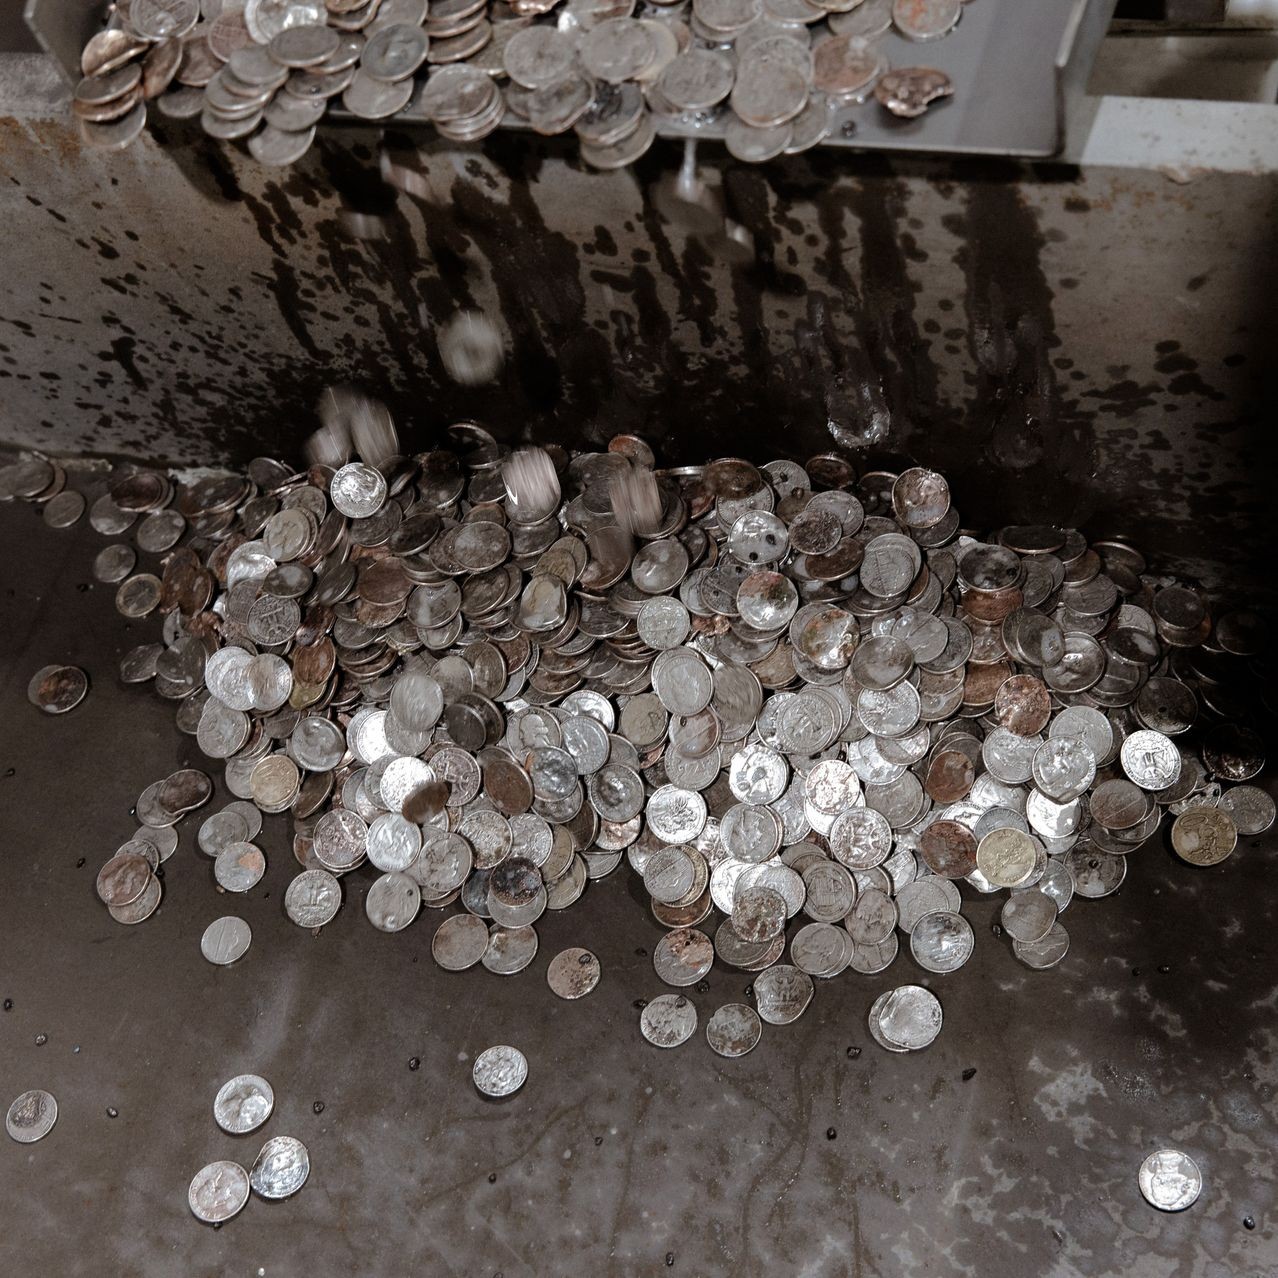 Người Mỹ vứt 68 triệu USD vào bãi rác mỗi năm: Chuyện nghề ‘đào vàng’ từ những đồng tiền ‘rác rưởi’, chính phủ tốn 707 triệu USD để sản xuất nhưng bị coi là đồ vô dụng- Ảnh 4.